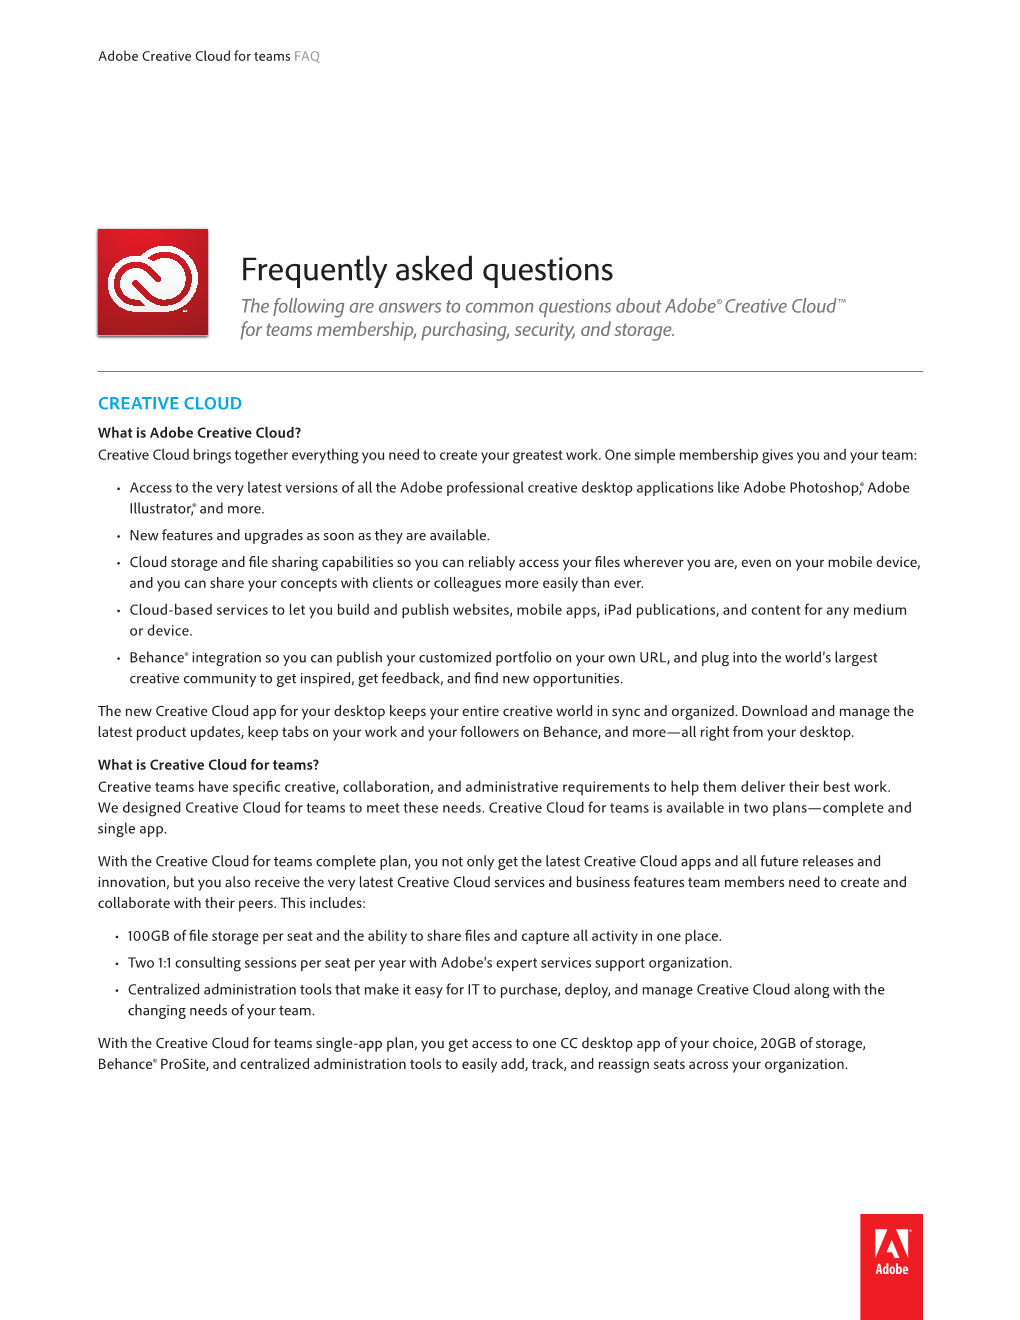 Adobe Creative Cloud for Teams FAQ